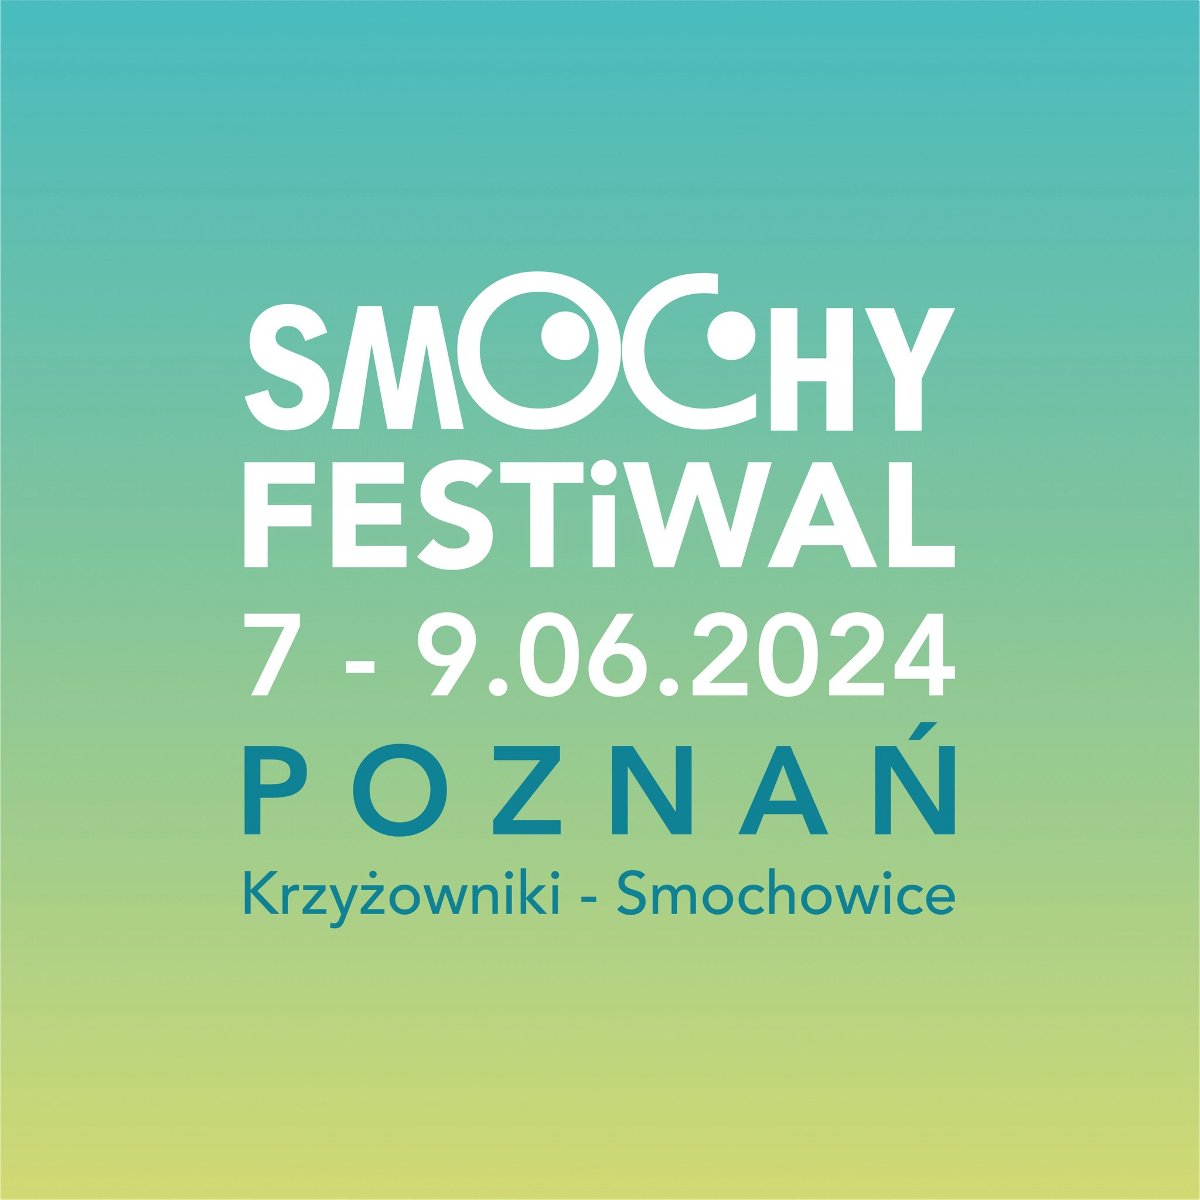 Zielony plakat z białym napisem "Smochy Festiwal". - grafika artykułu